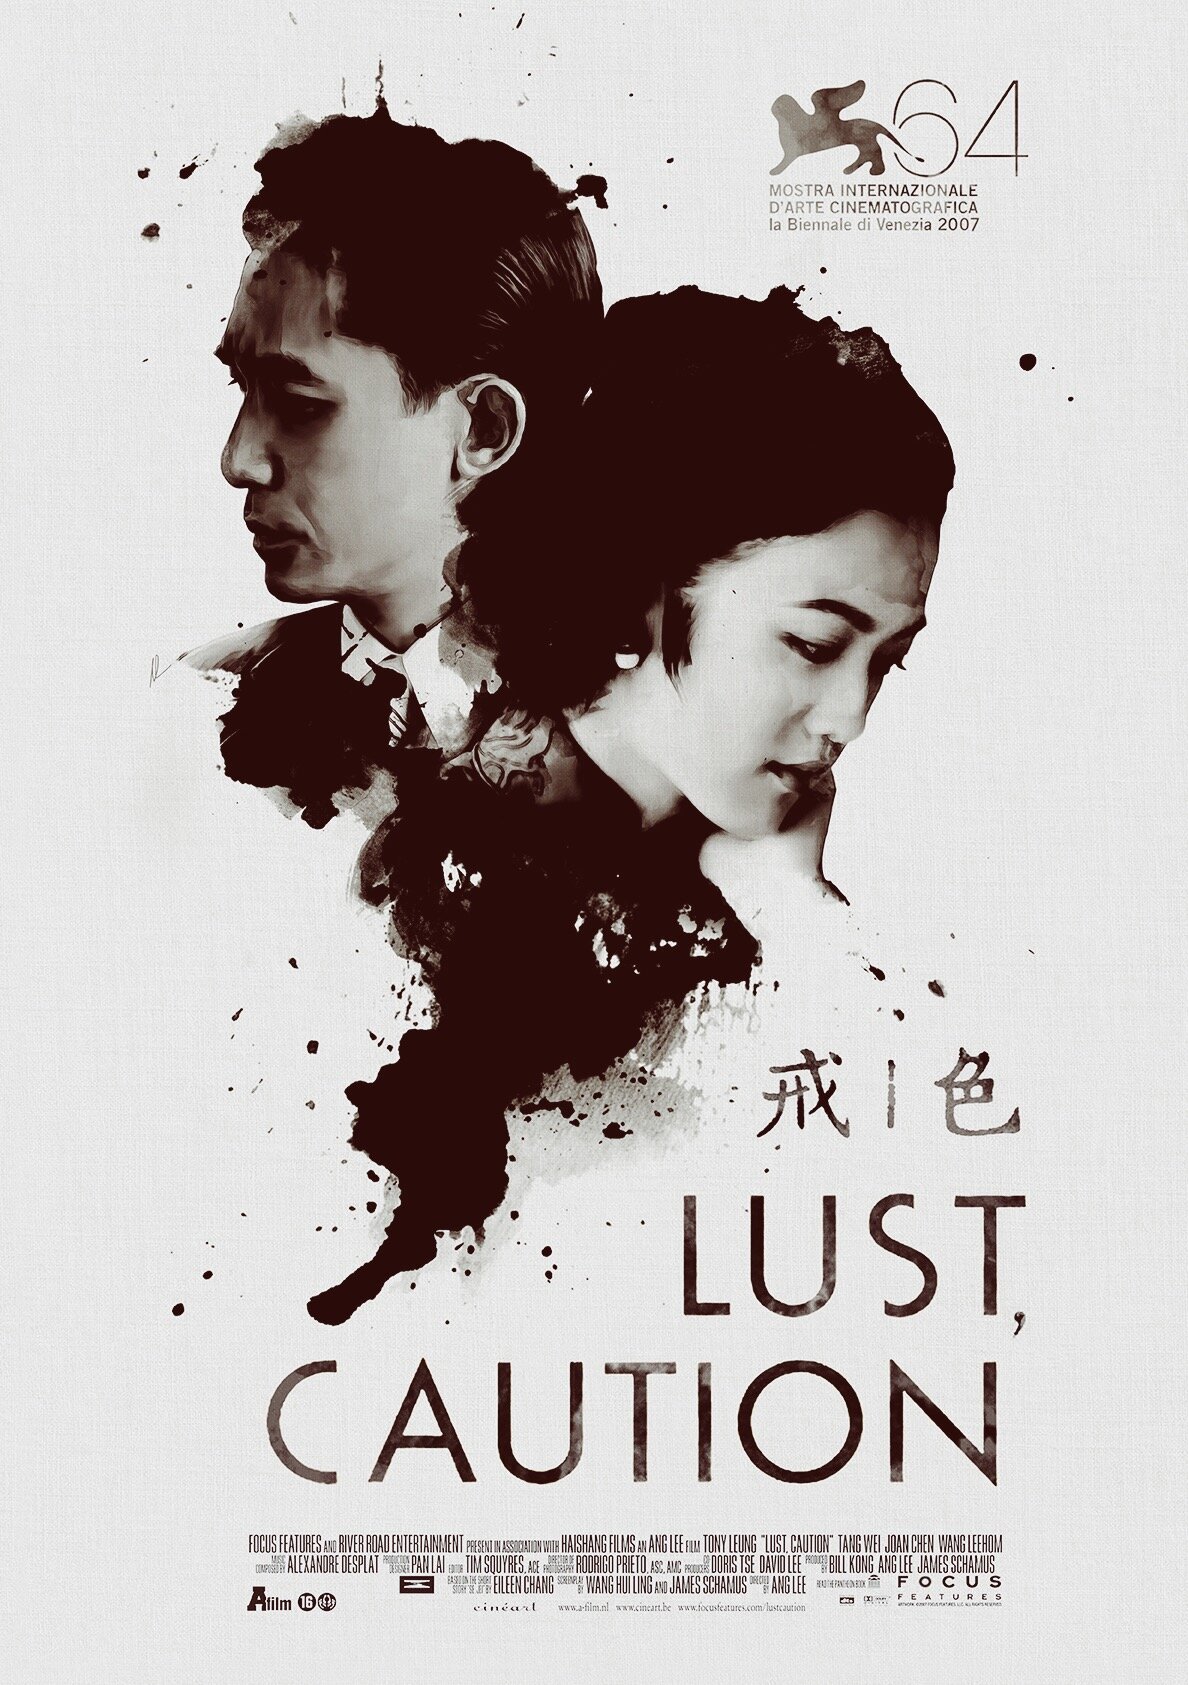 Lust Caution film